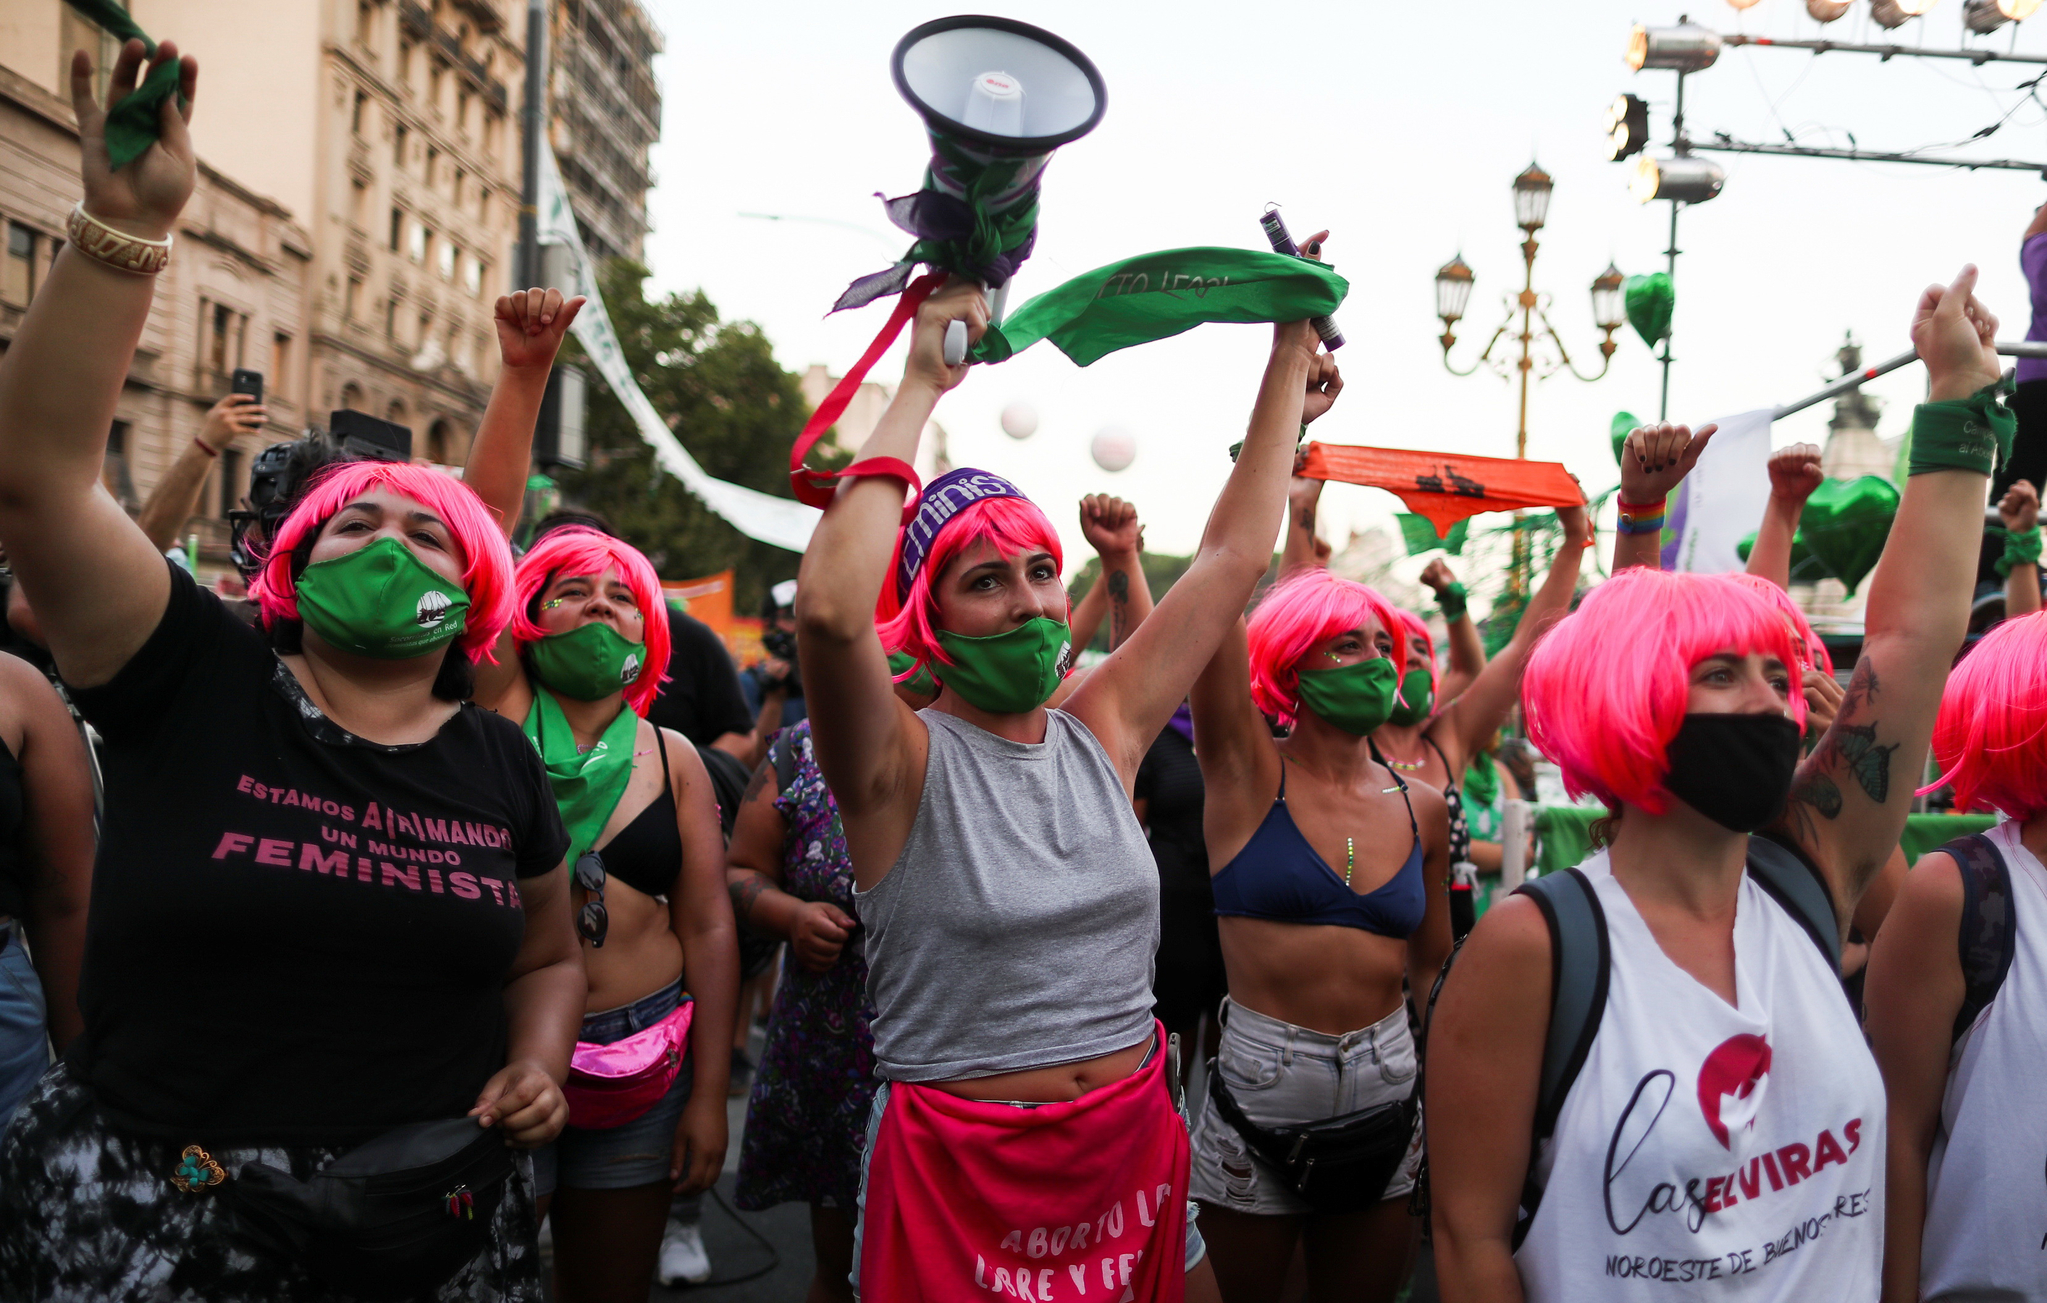 낙태 합법화를 요구하는 아르헨티나 시위대가 29일 상원이 낙태에 관한 법률을 심의하는 동안 의사당 앞에서 집회를 열고 있다. 로이터=연합뉴스